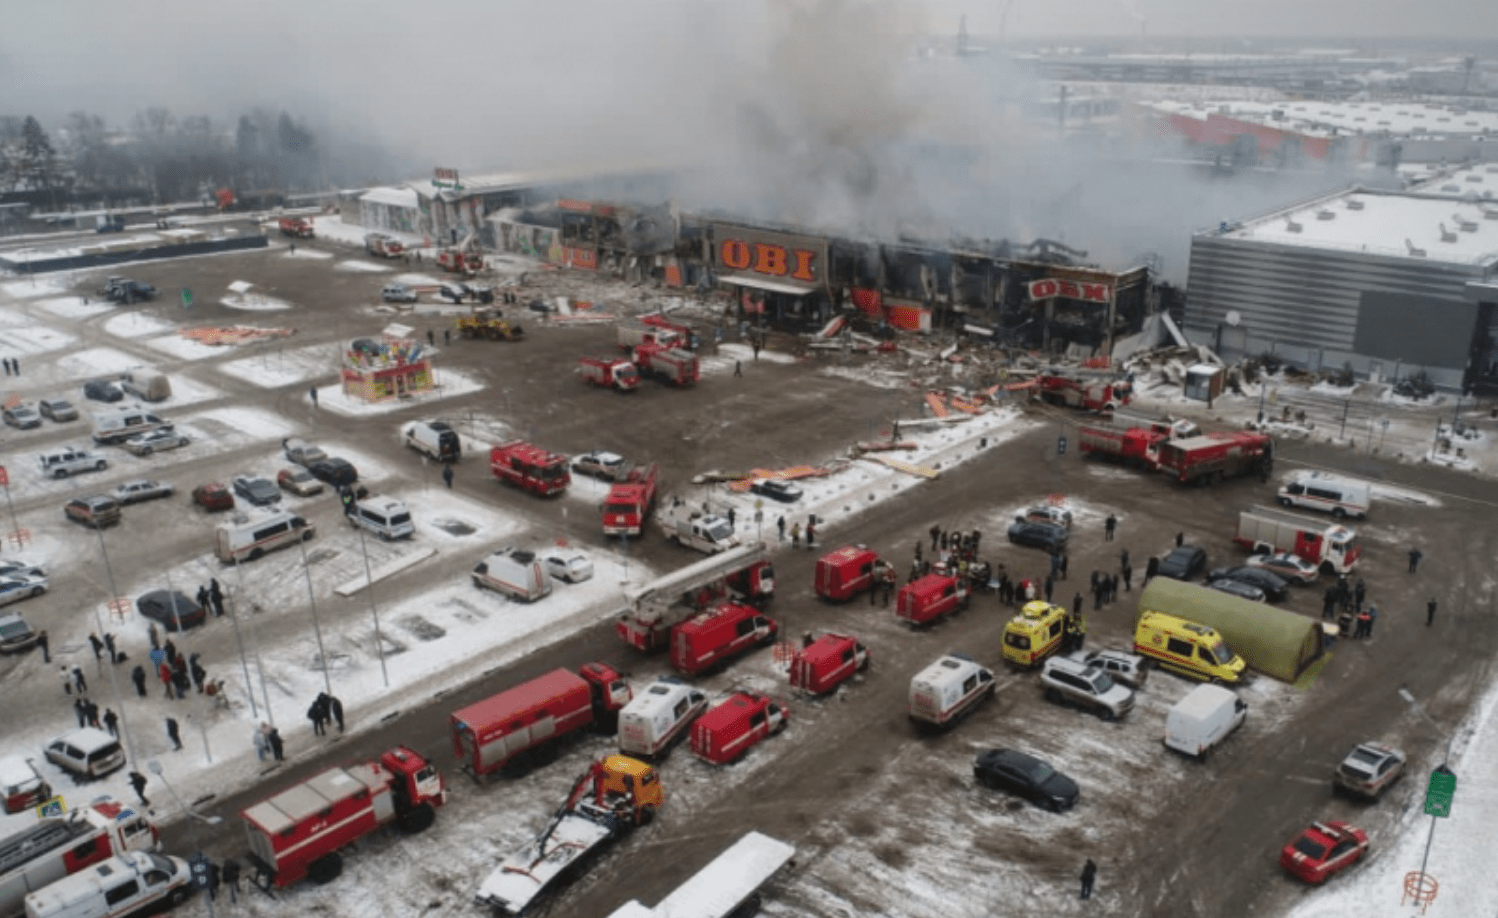 СК России: пожар в подмосковном ТЦ «Мега Химки» начался из-за сварочных работ